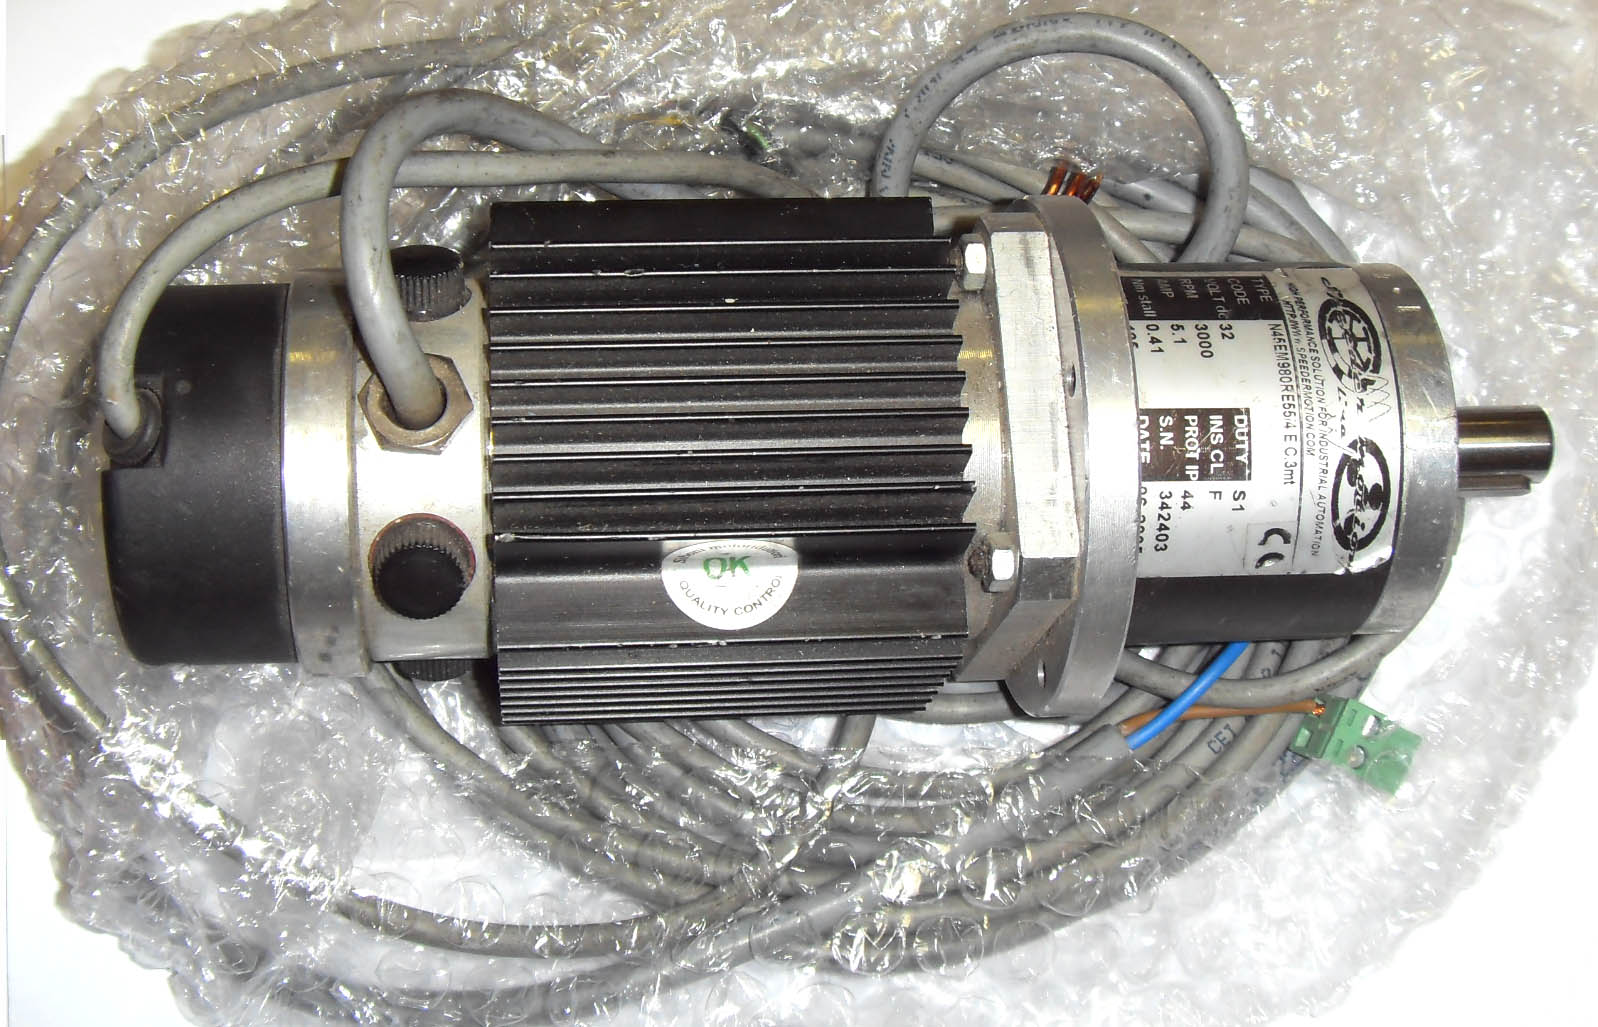 Описание: Описание: Электродвигатель INDRAMAT MAC 90B-0-JD-2-C\110-A-1